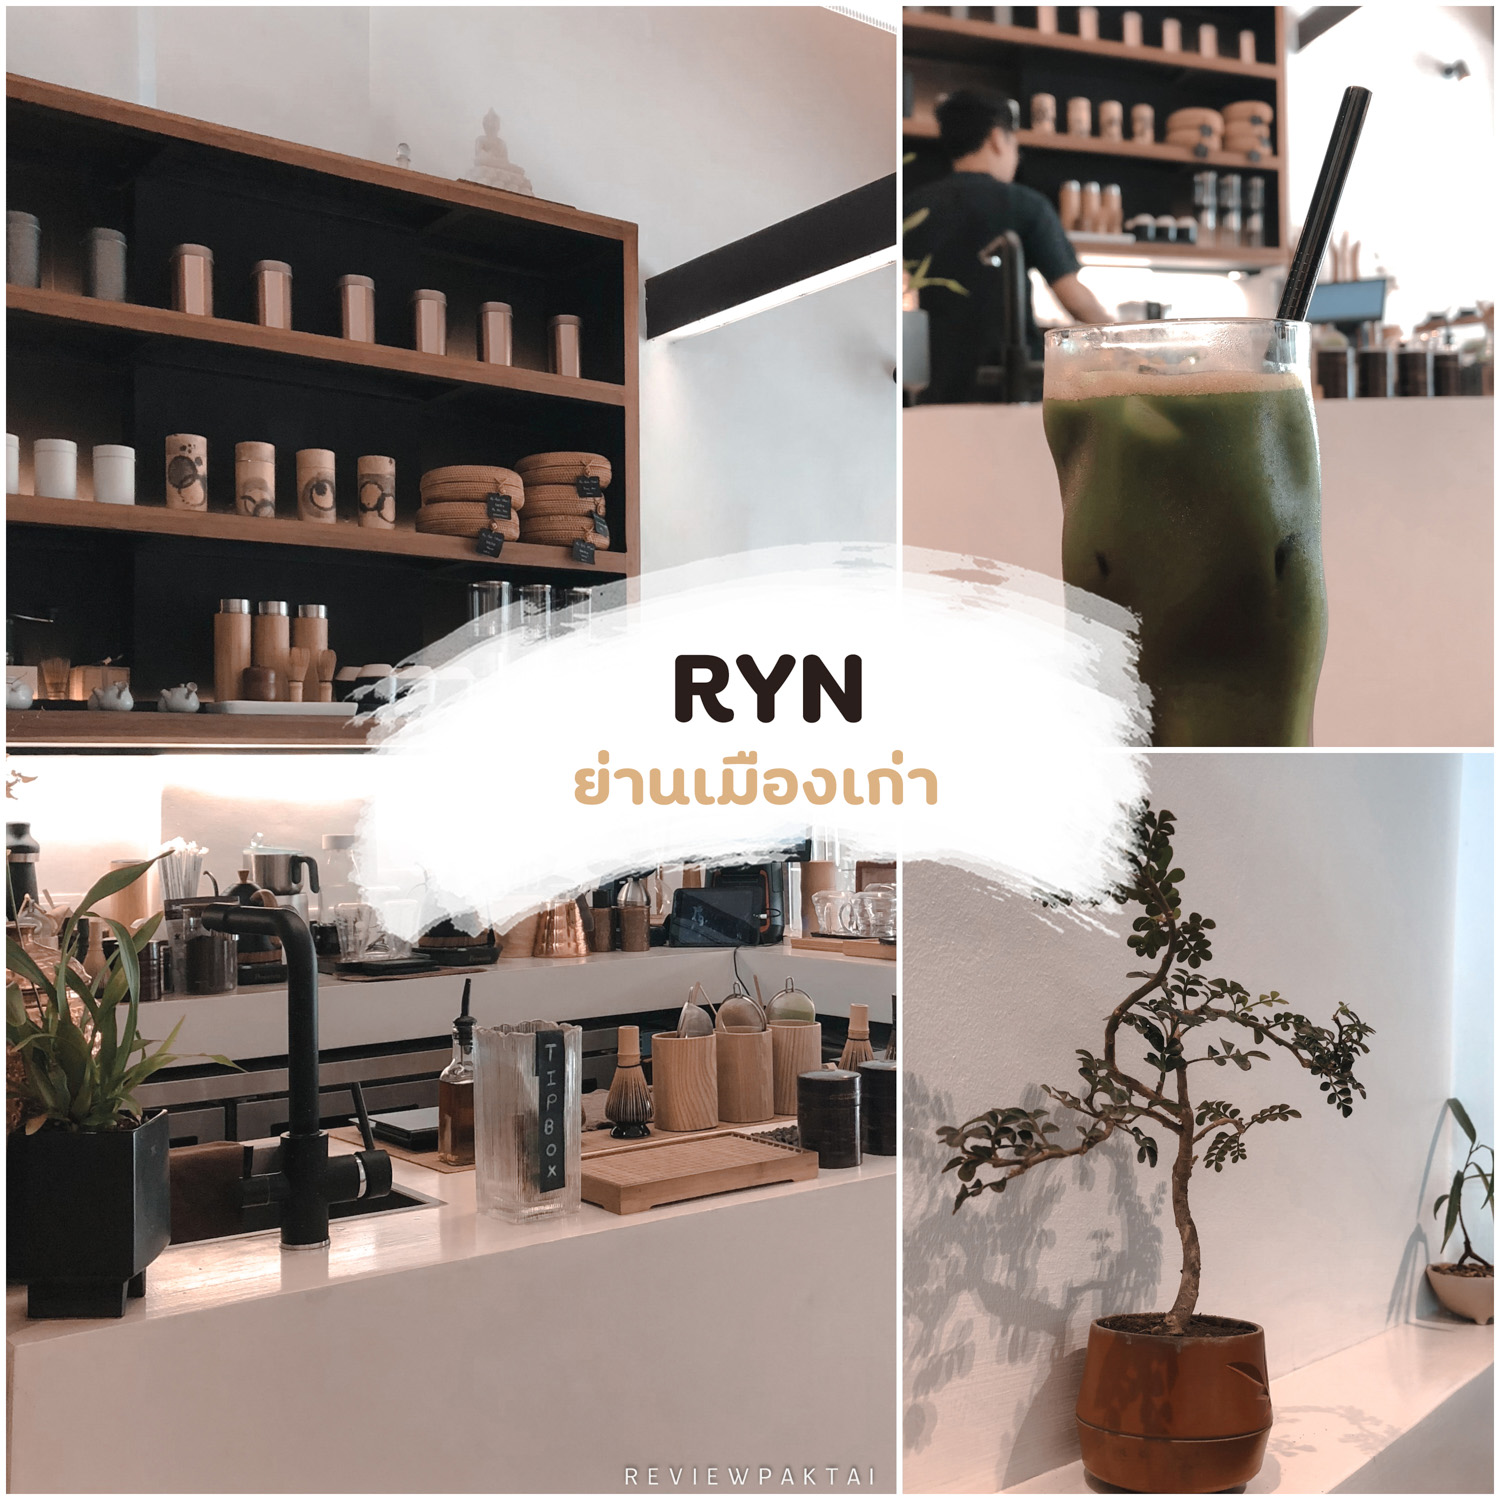 Ryn-Cafe-ภูเก็ต -ร้านเล็กๆ-สไตล์นิปปอน-มินิมอล-ตกแต่งด้วยสไตล์ไม่เหมือนใคร-มัทฉะเด็ดเช่นกันงับบ
 ที่เที่ยวภูเก็ต,ย่านเมืองเก่า